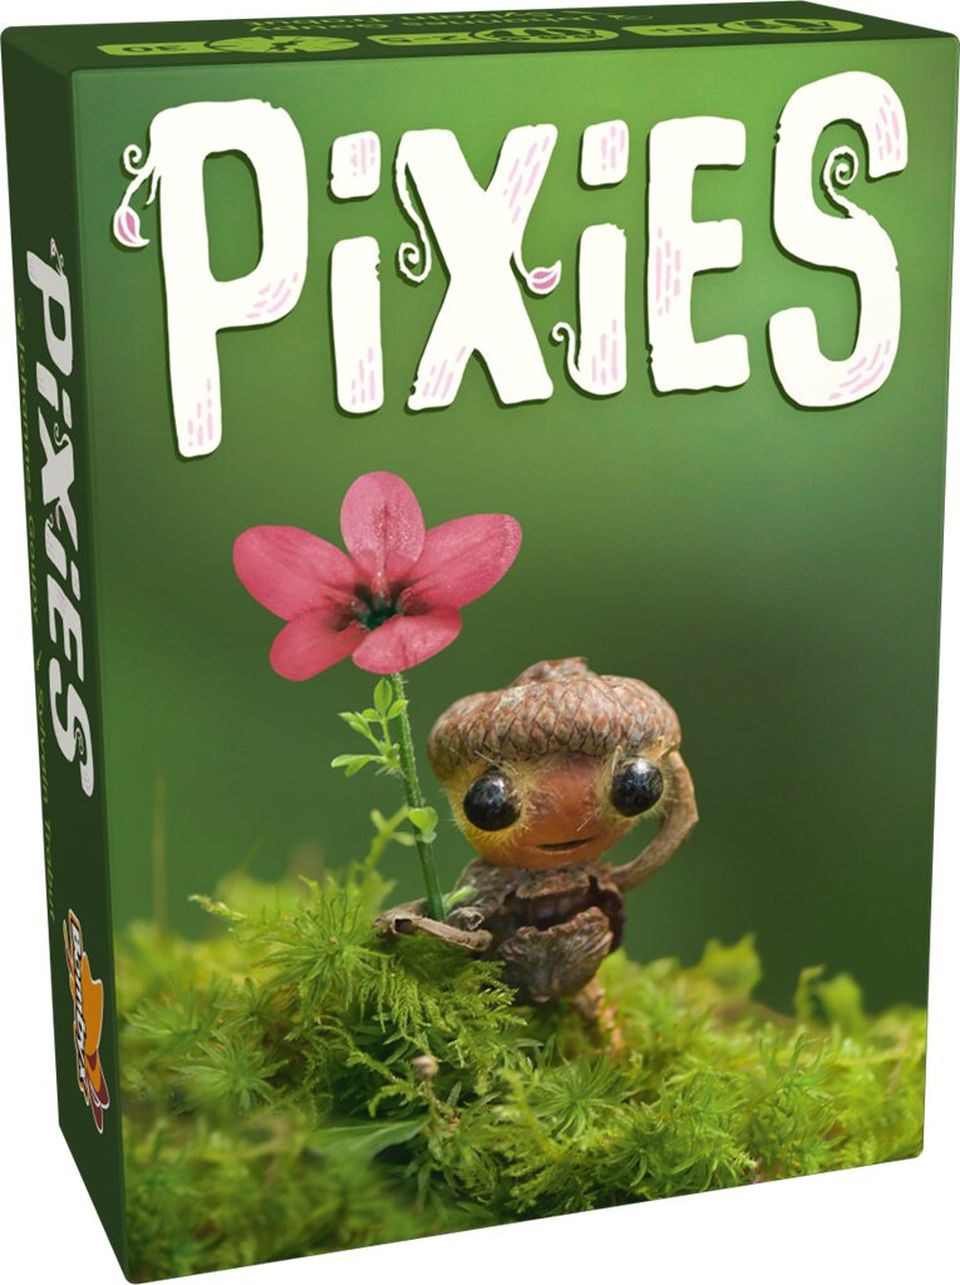 Pixies image